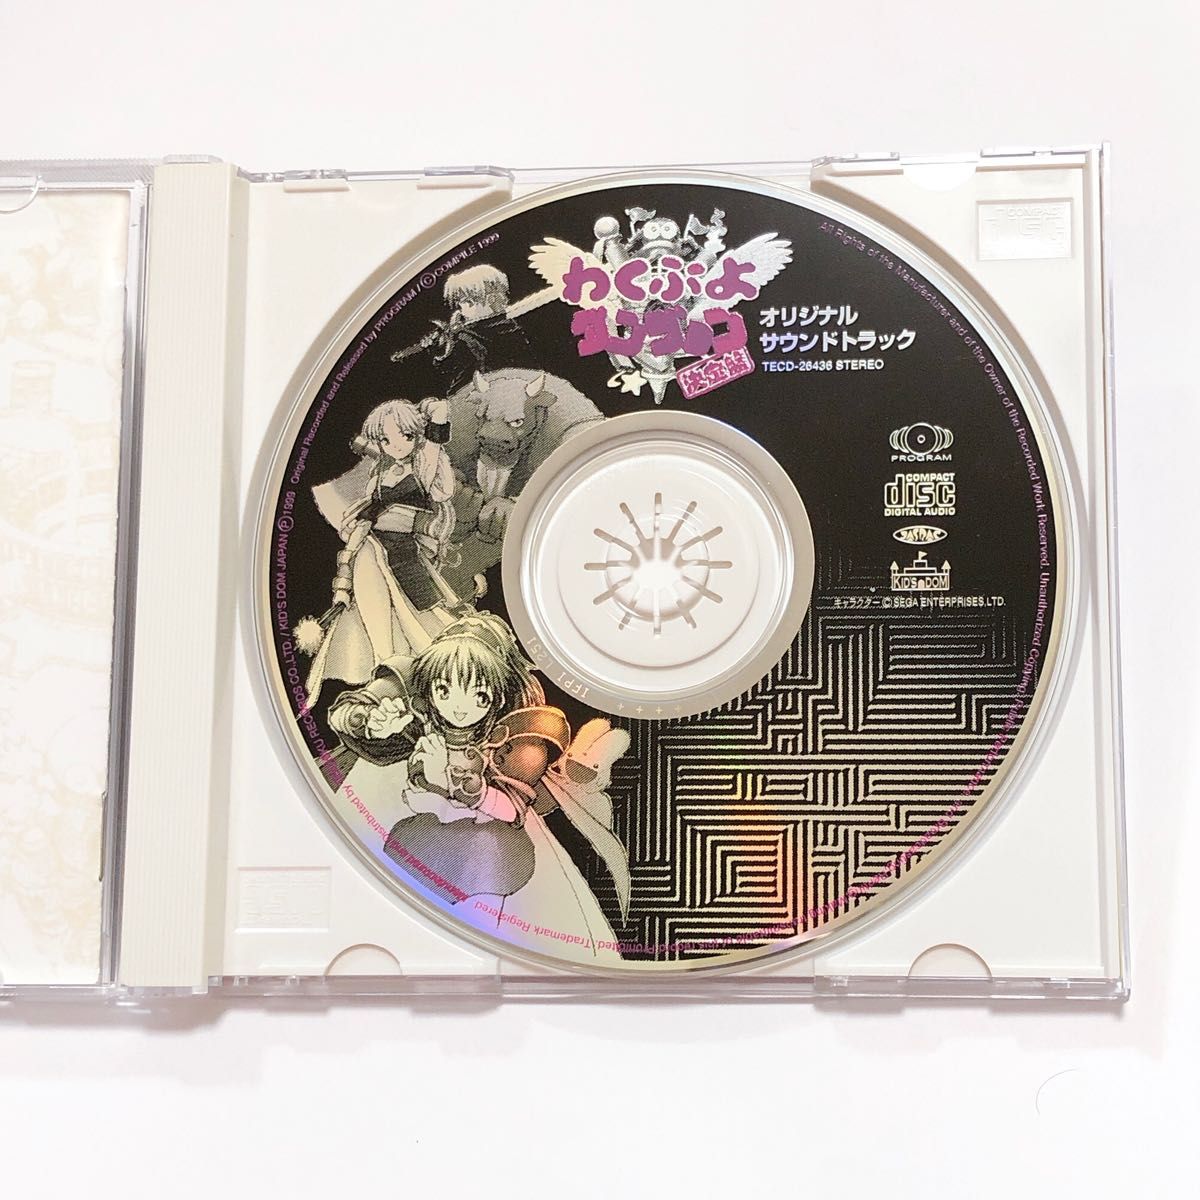 わくぷよダンジョン決定盤 オリジナルサウンドトラック サントラ CD コンパイル わくわくぷよぷよダンジョン決定盤 魔導物語